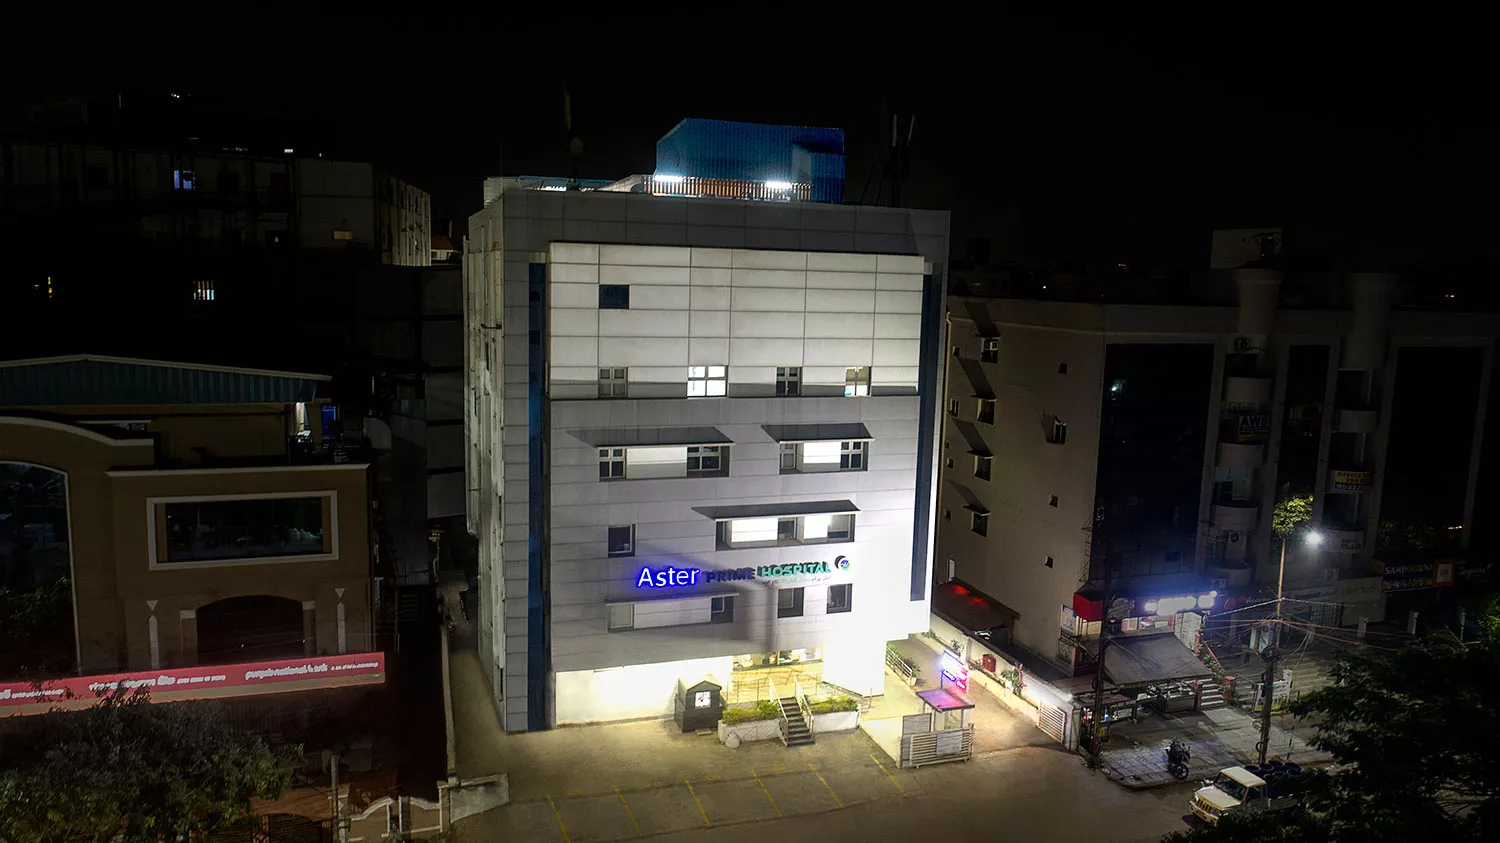 Aster Prime Hospital Hyderabad